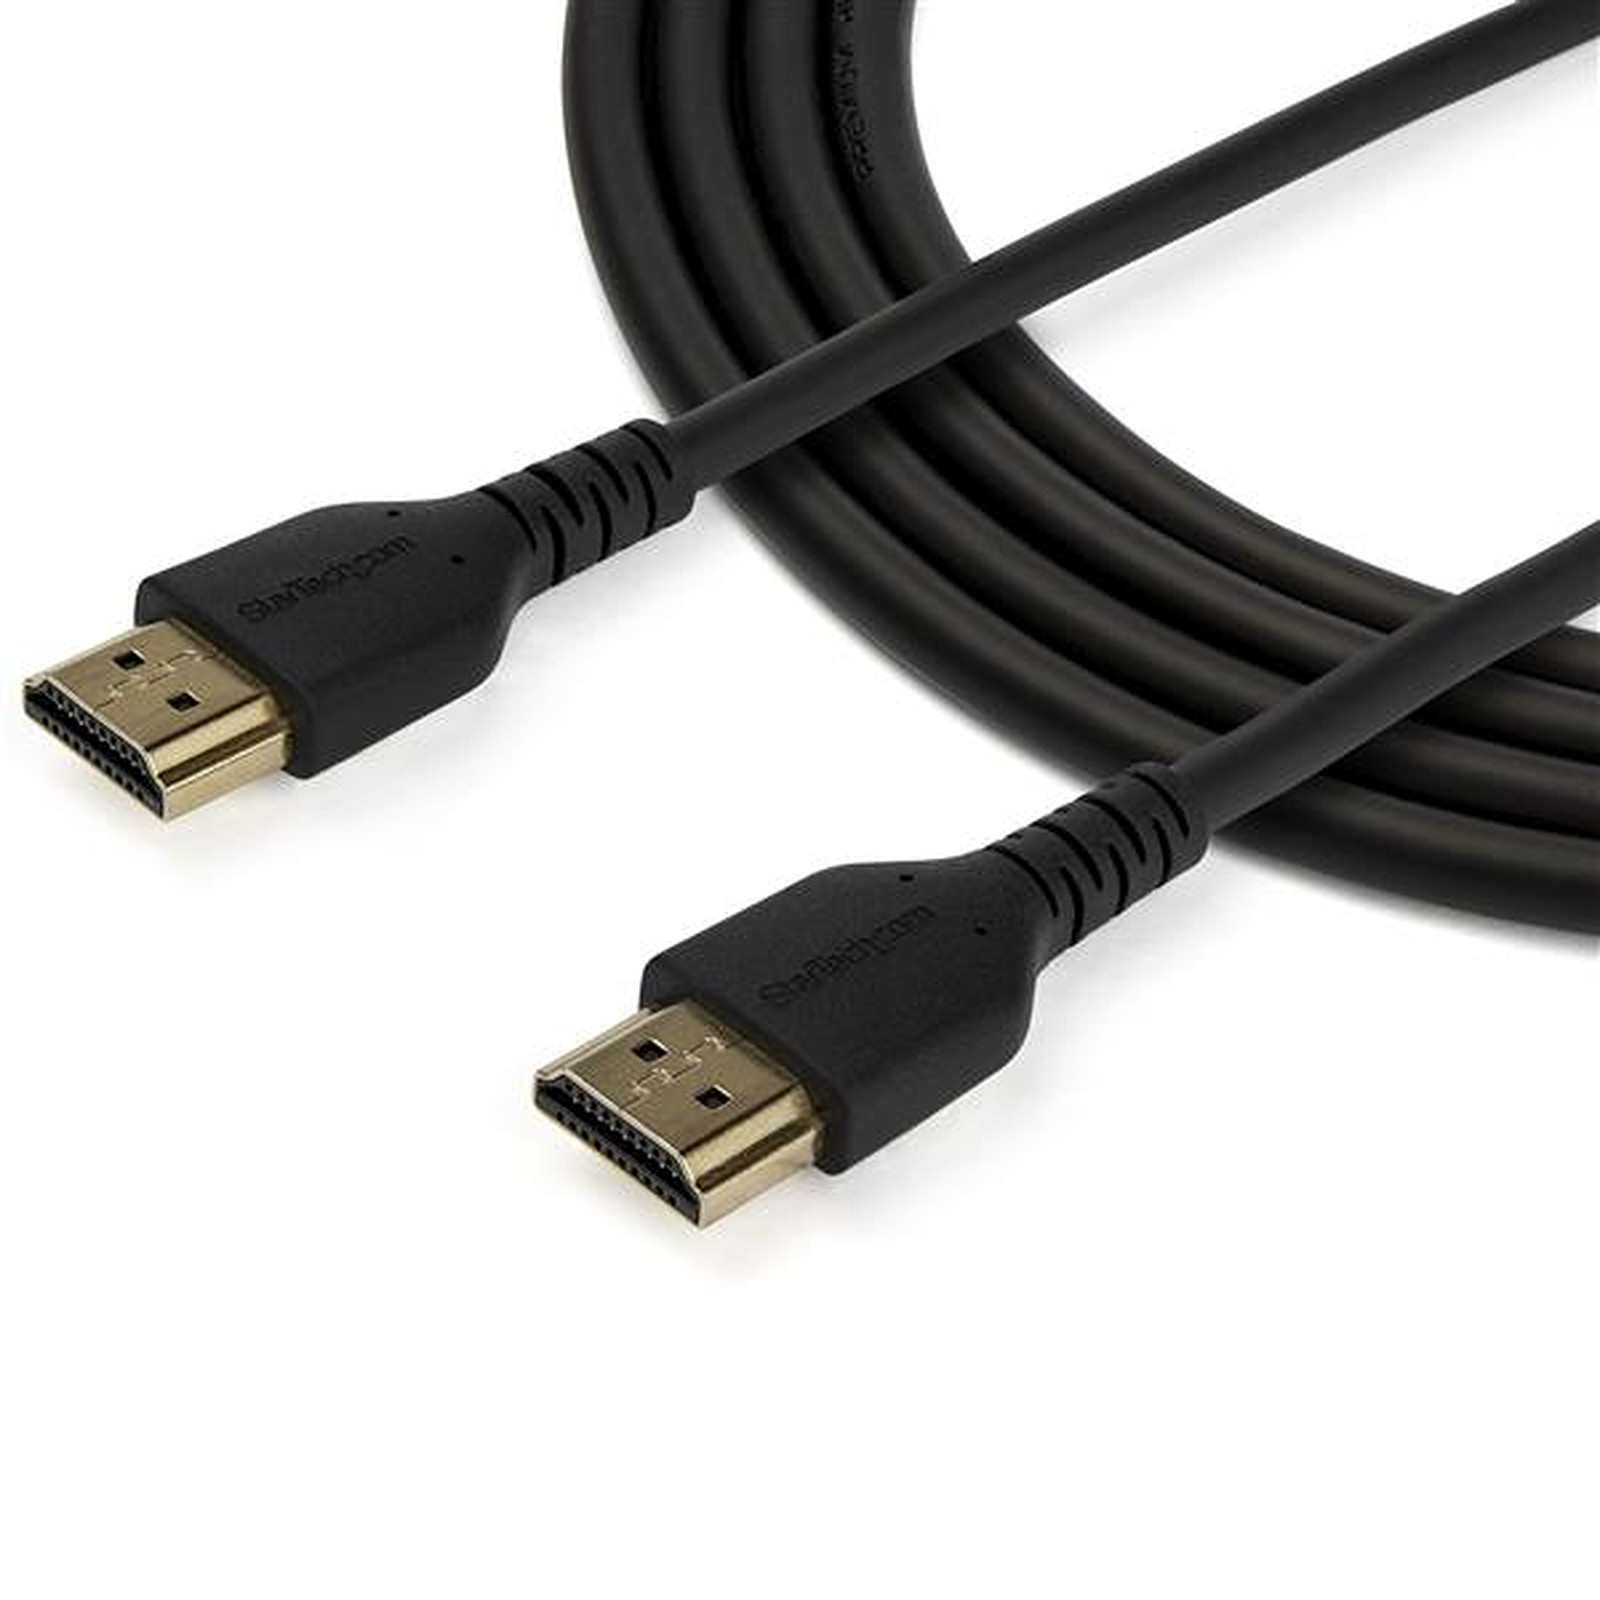 Cable HDMI 10m - Accessoires Ordinateurs - Yaratech #1 Boutique